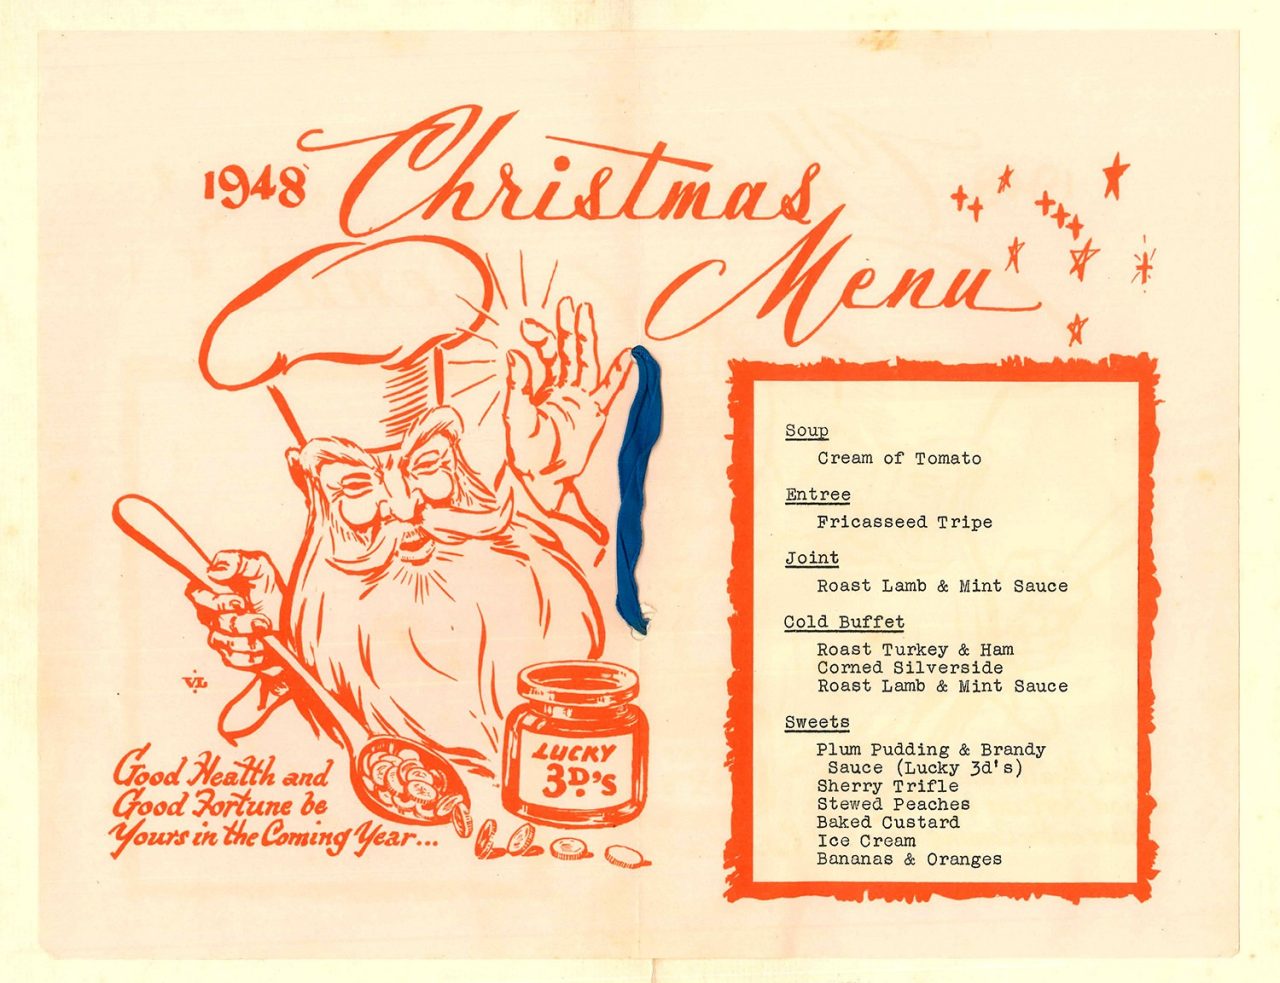 1948's Christmas menu